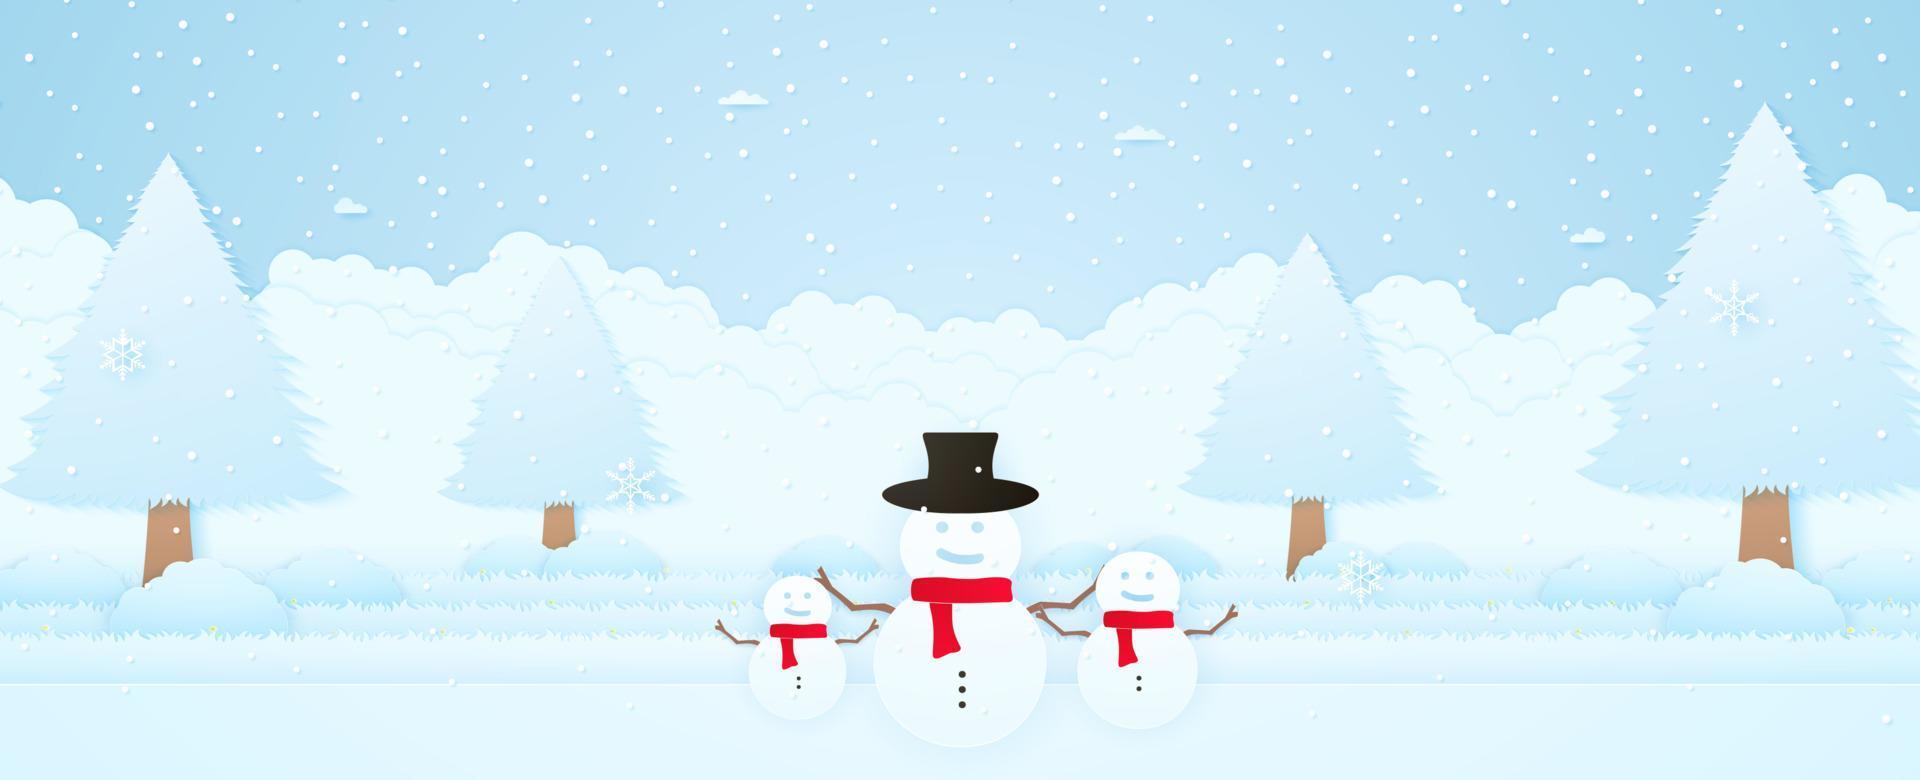 feliz navidad, paisaje de invierno, muñeco de nieve de bienvenida con árbol en el jardín, nieve cayendo y copos de nieve, tarjeta de invitación, estilo de arte en papel vector